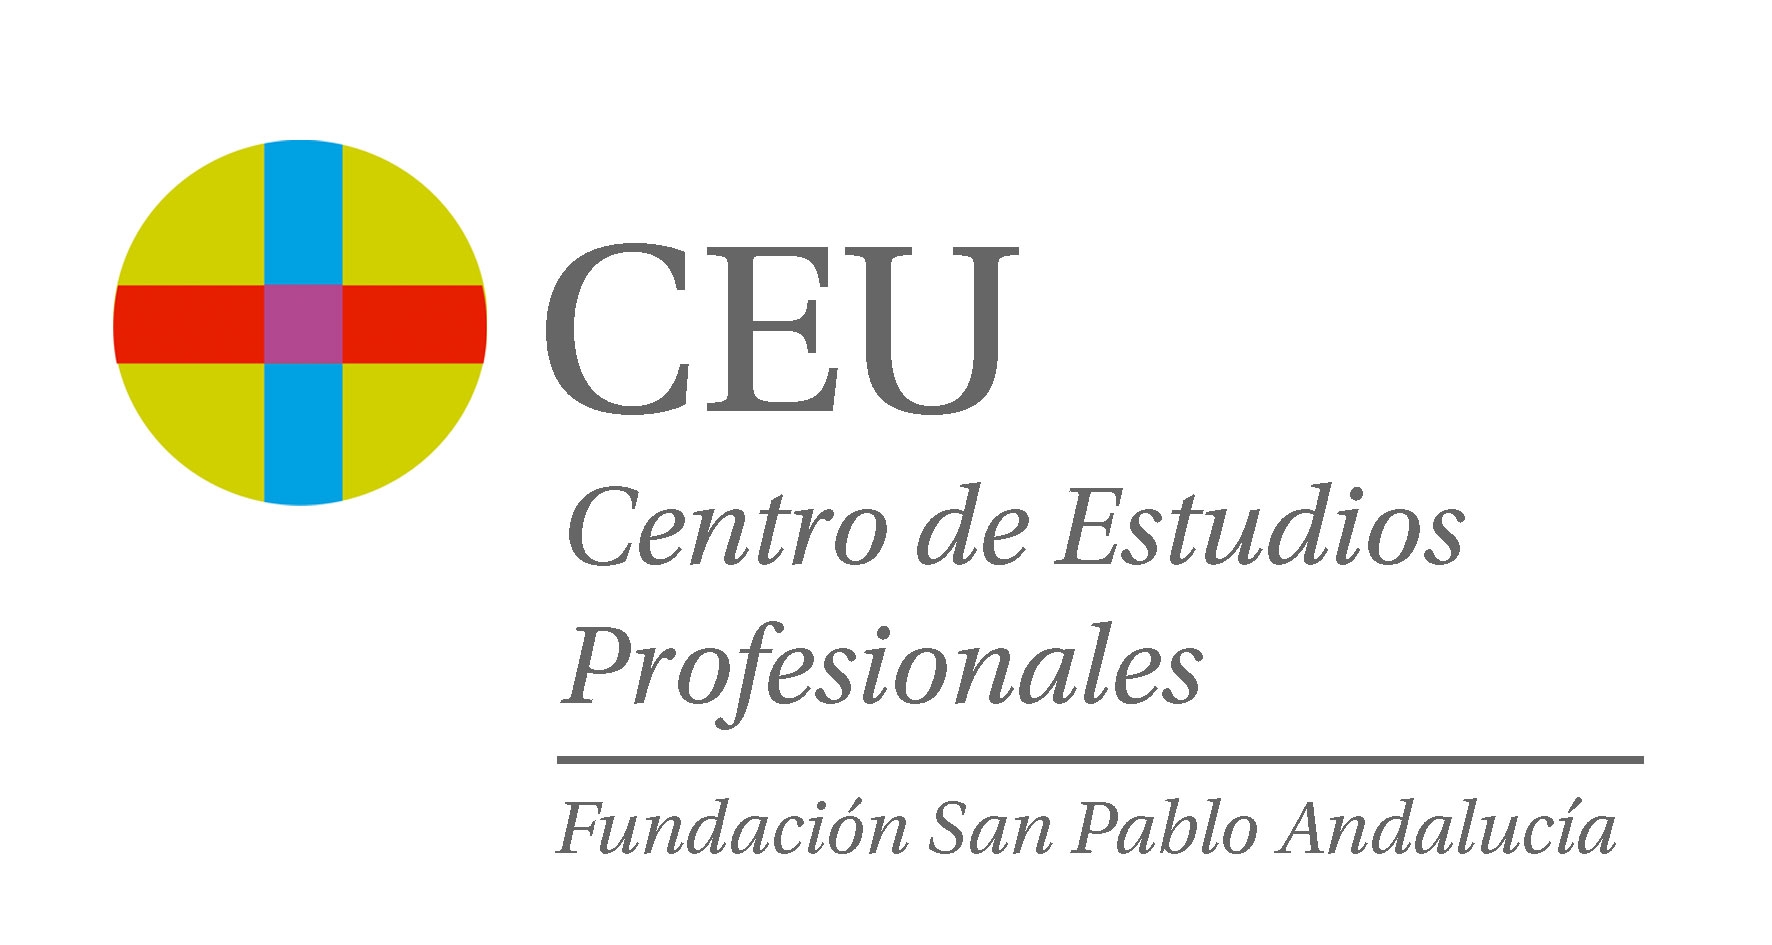 Centro de formación Fundación San Pablo Andalucía CEU